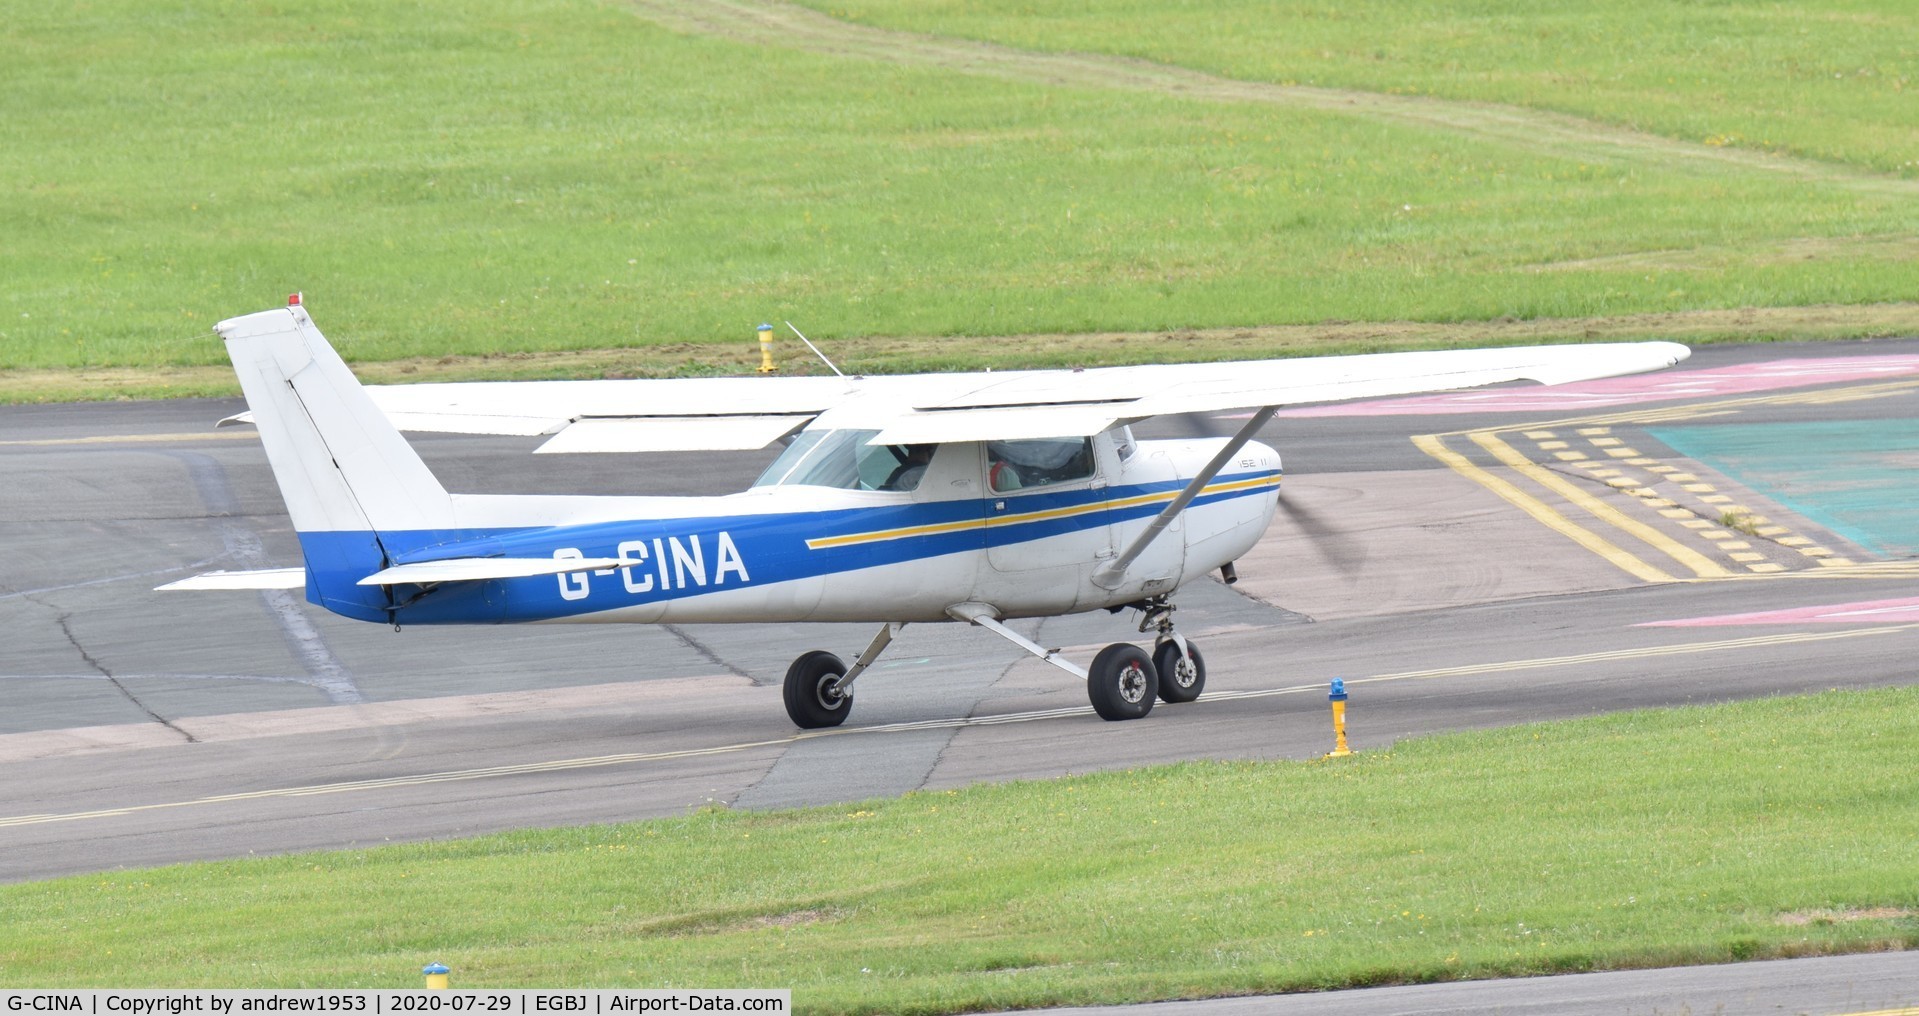 G-CINA, 1984 Cessna 152 C/N 152-85894, G-CINA at Gloucestershire Airport.